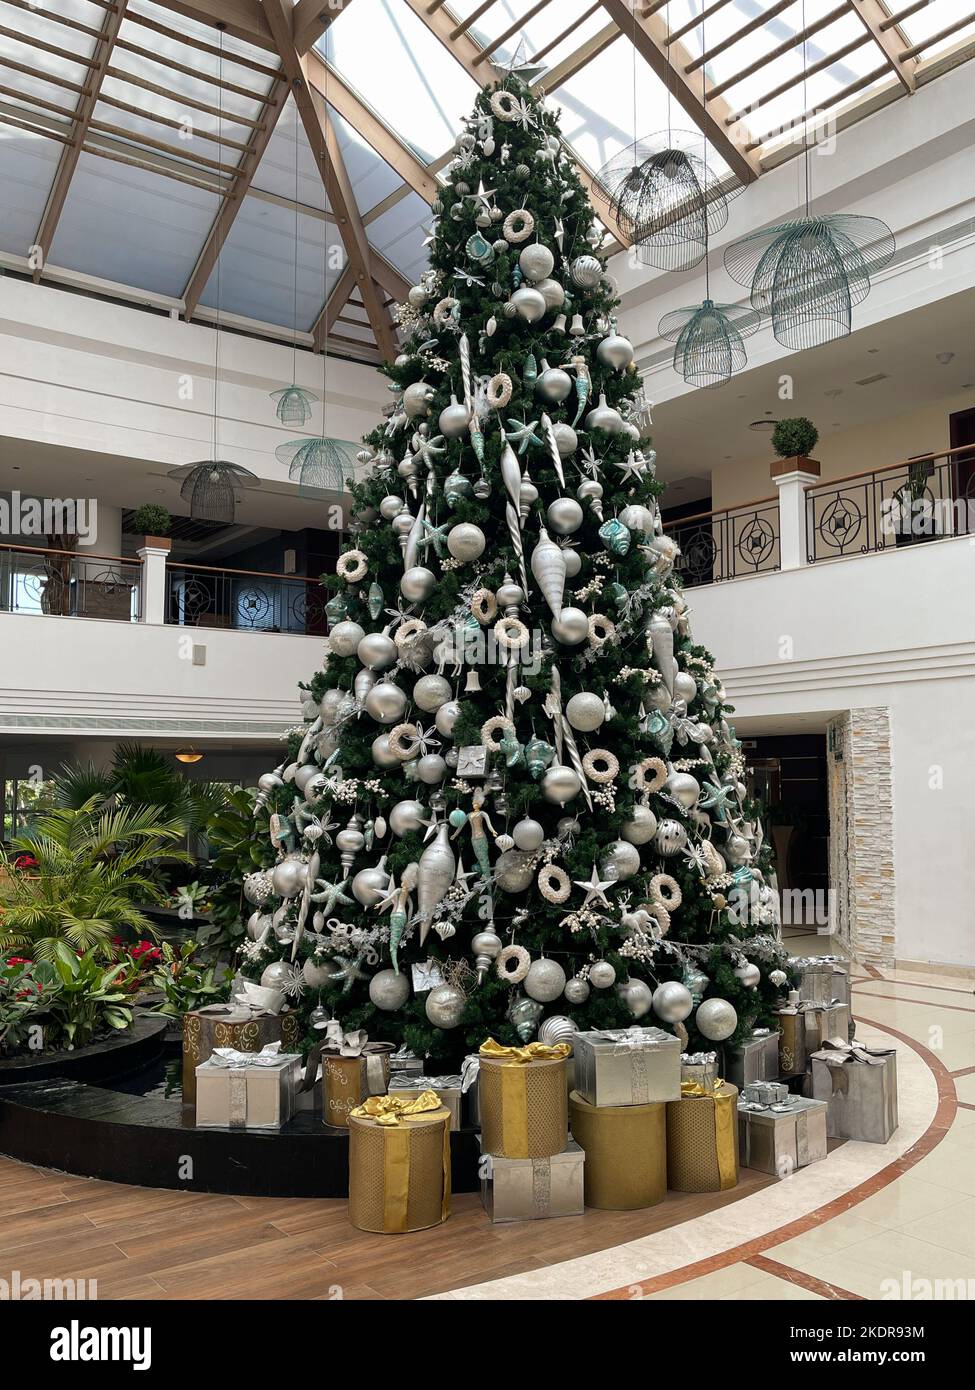 Blick auf einen hohen Weihnachtsbaum, wunderschön dekoriert mit vielen Geschenken, die unter dem Baum platziert sind. Stockfoto